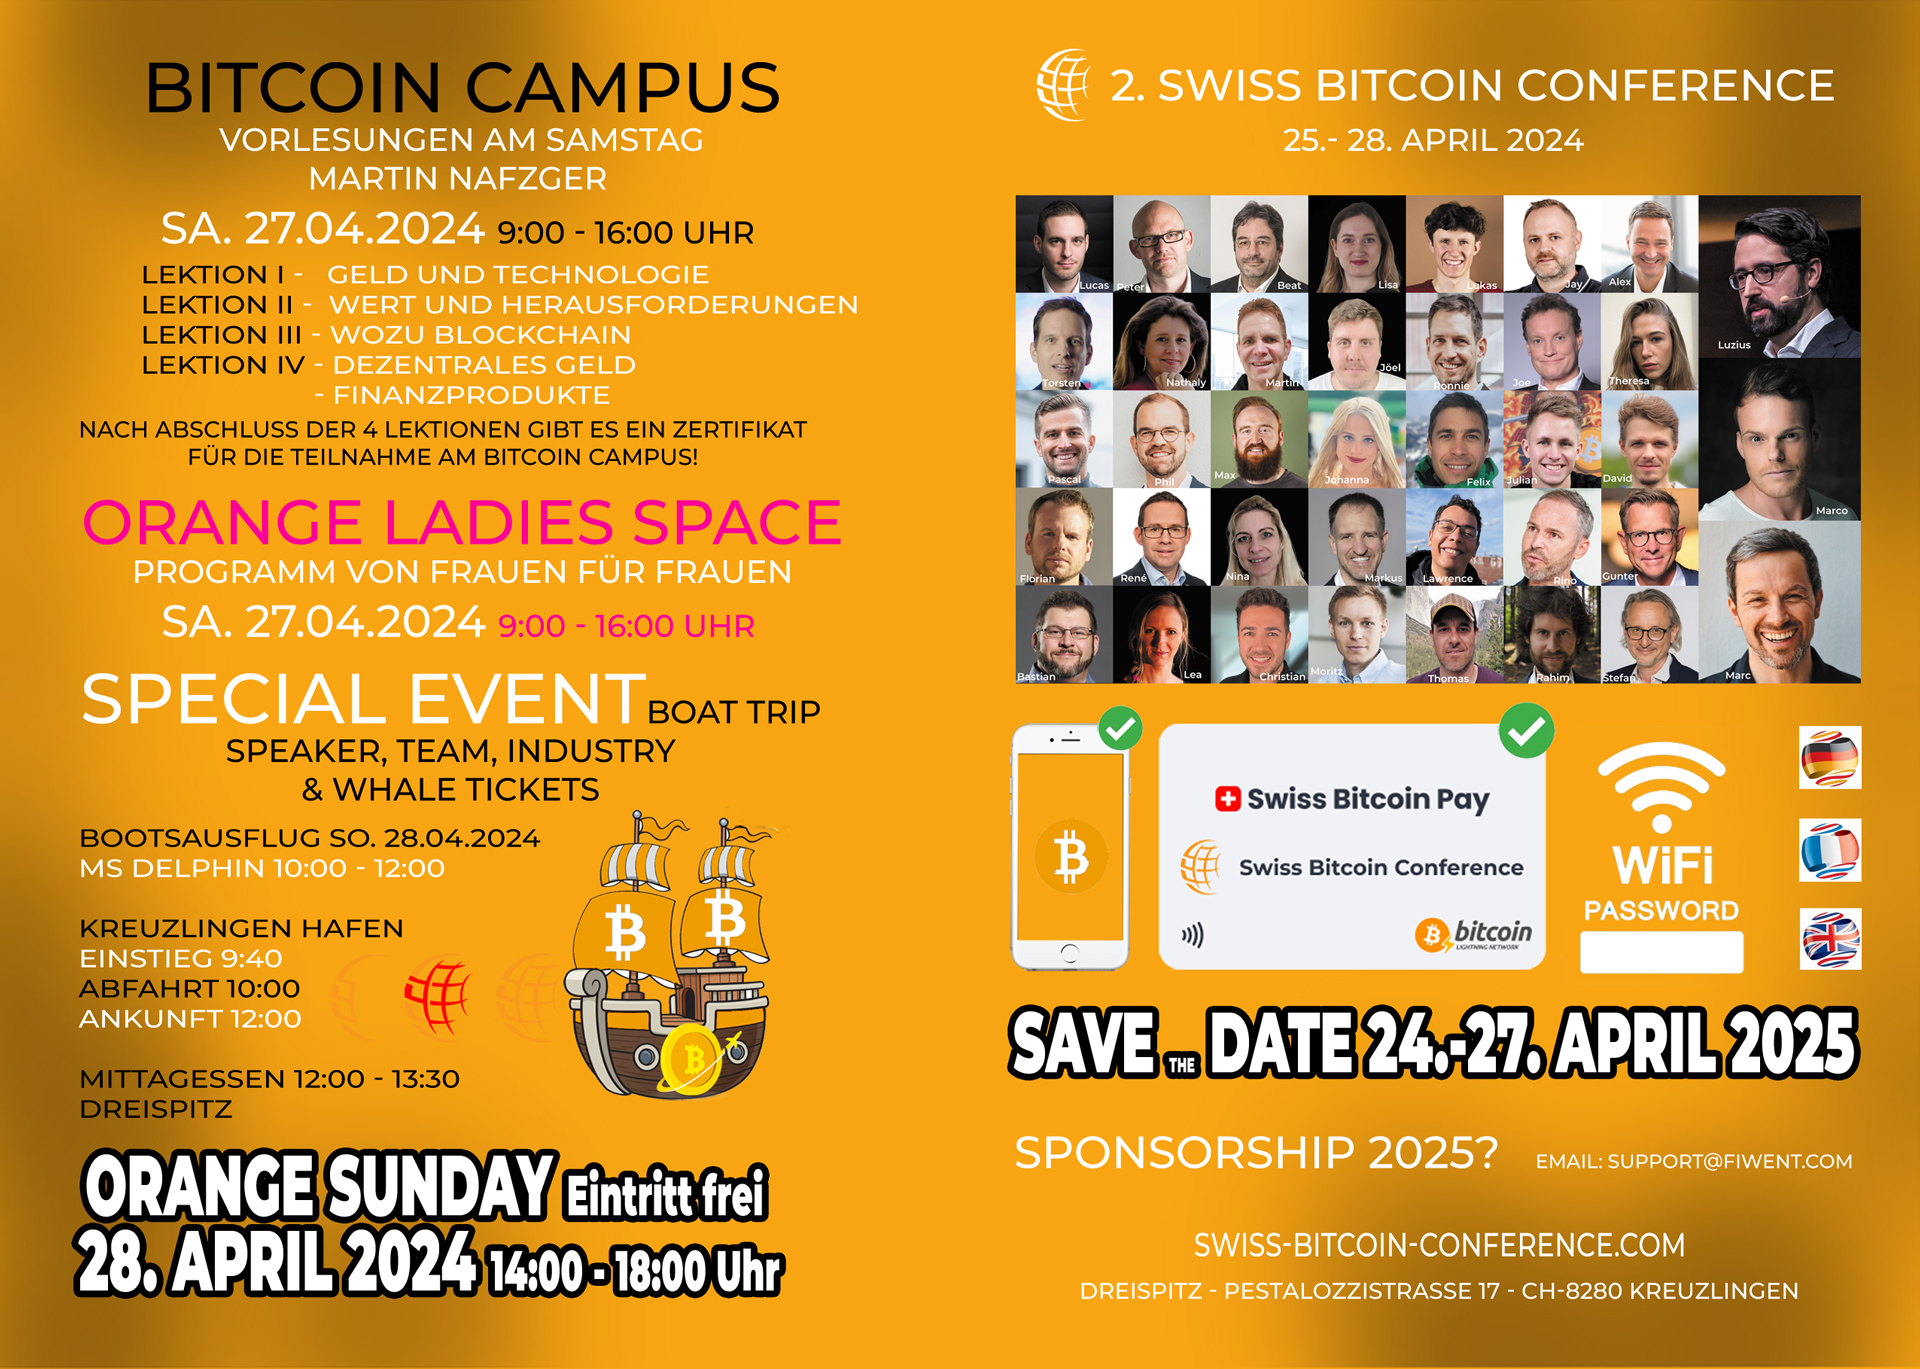 Kreuzlingen im Zeichen der 2. Swiss Bitcoin Conference